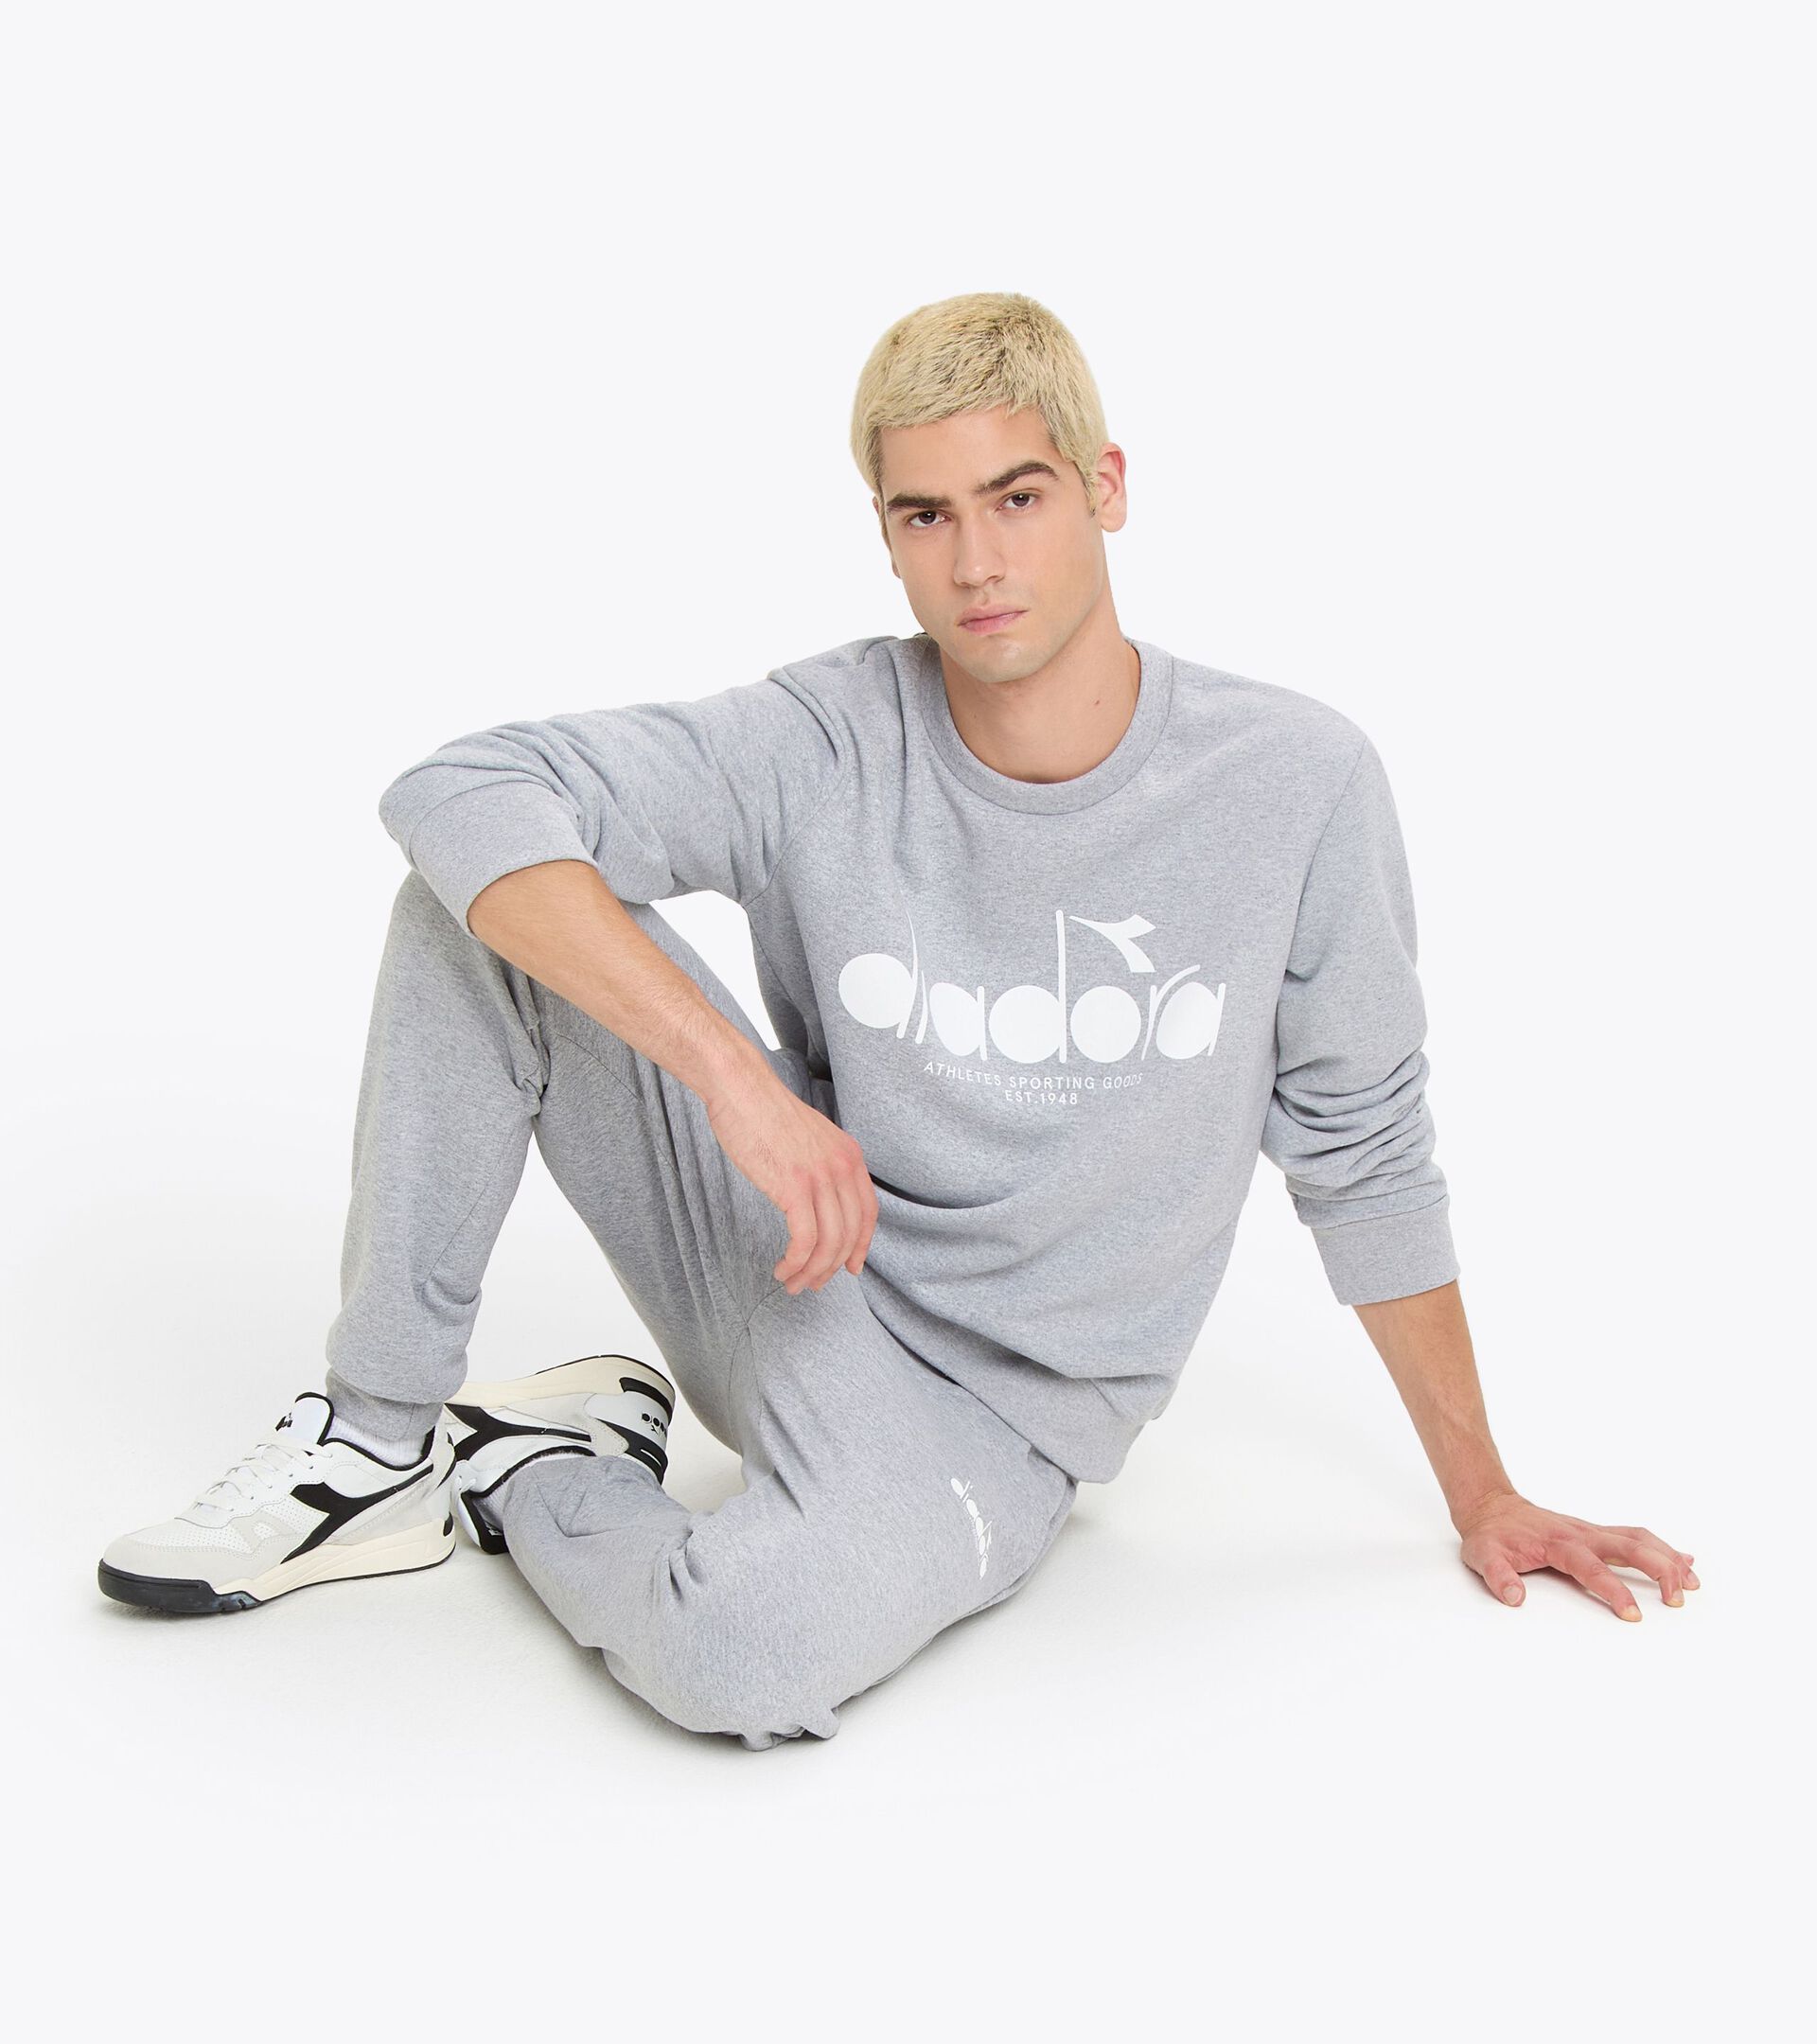 Sweatshirt aus Baumwolle mit rundem Ausschnitt - Genderneutral SWEATSHIRT CREW LOGO HOCHHAUS MELANGE - Diadora